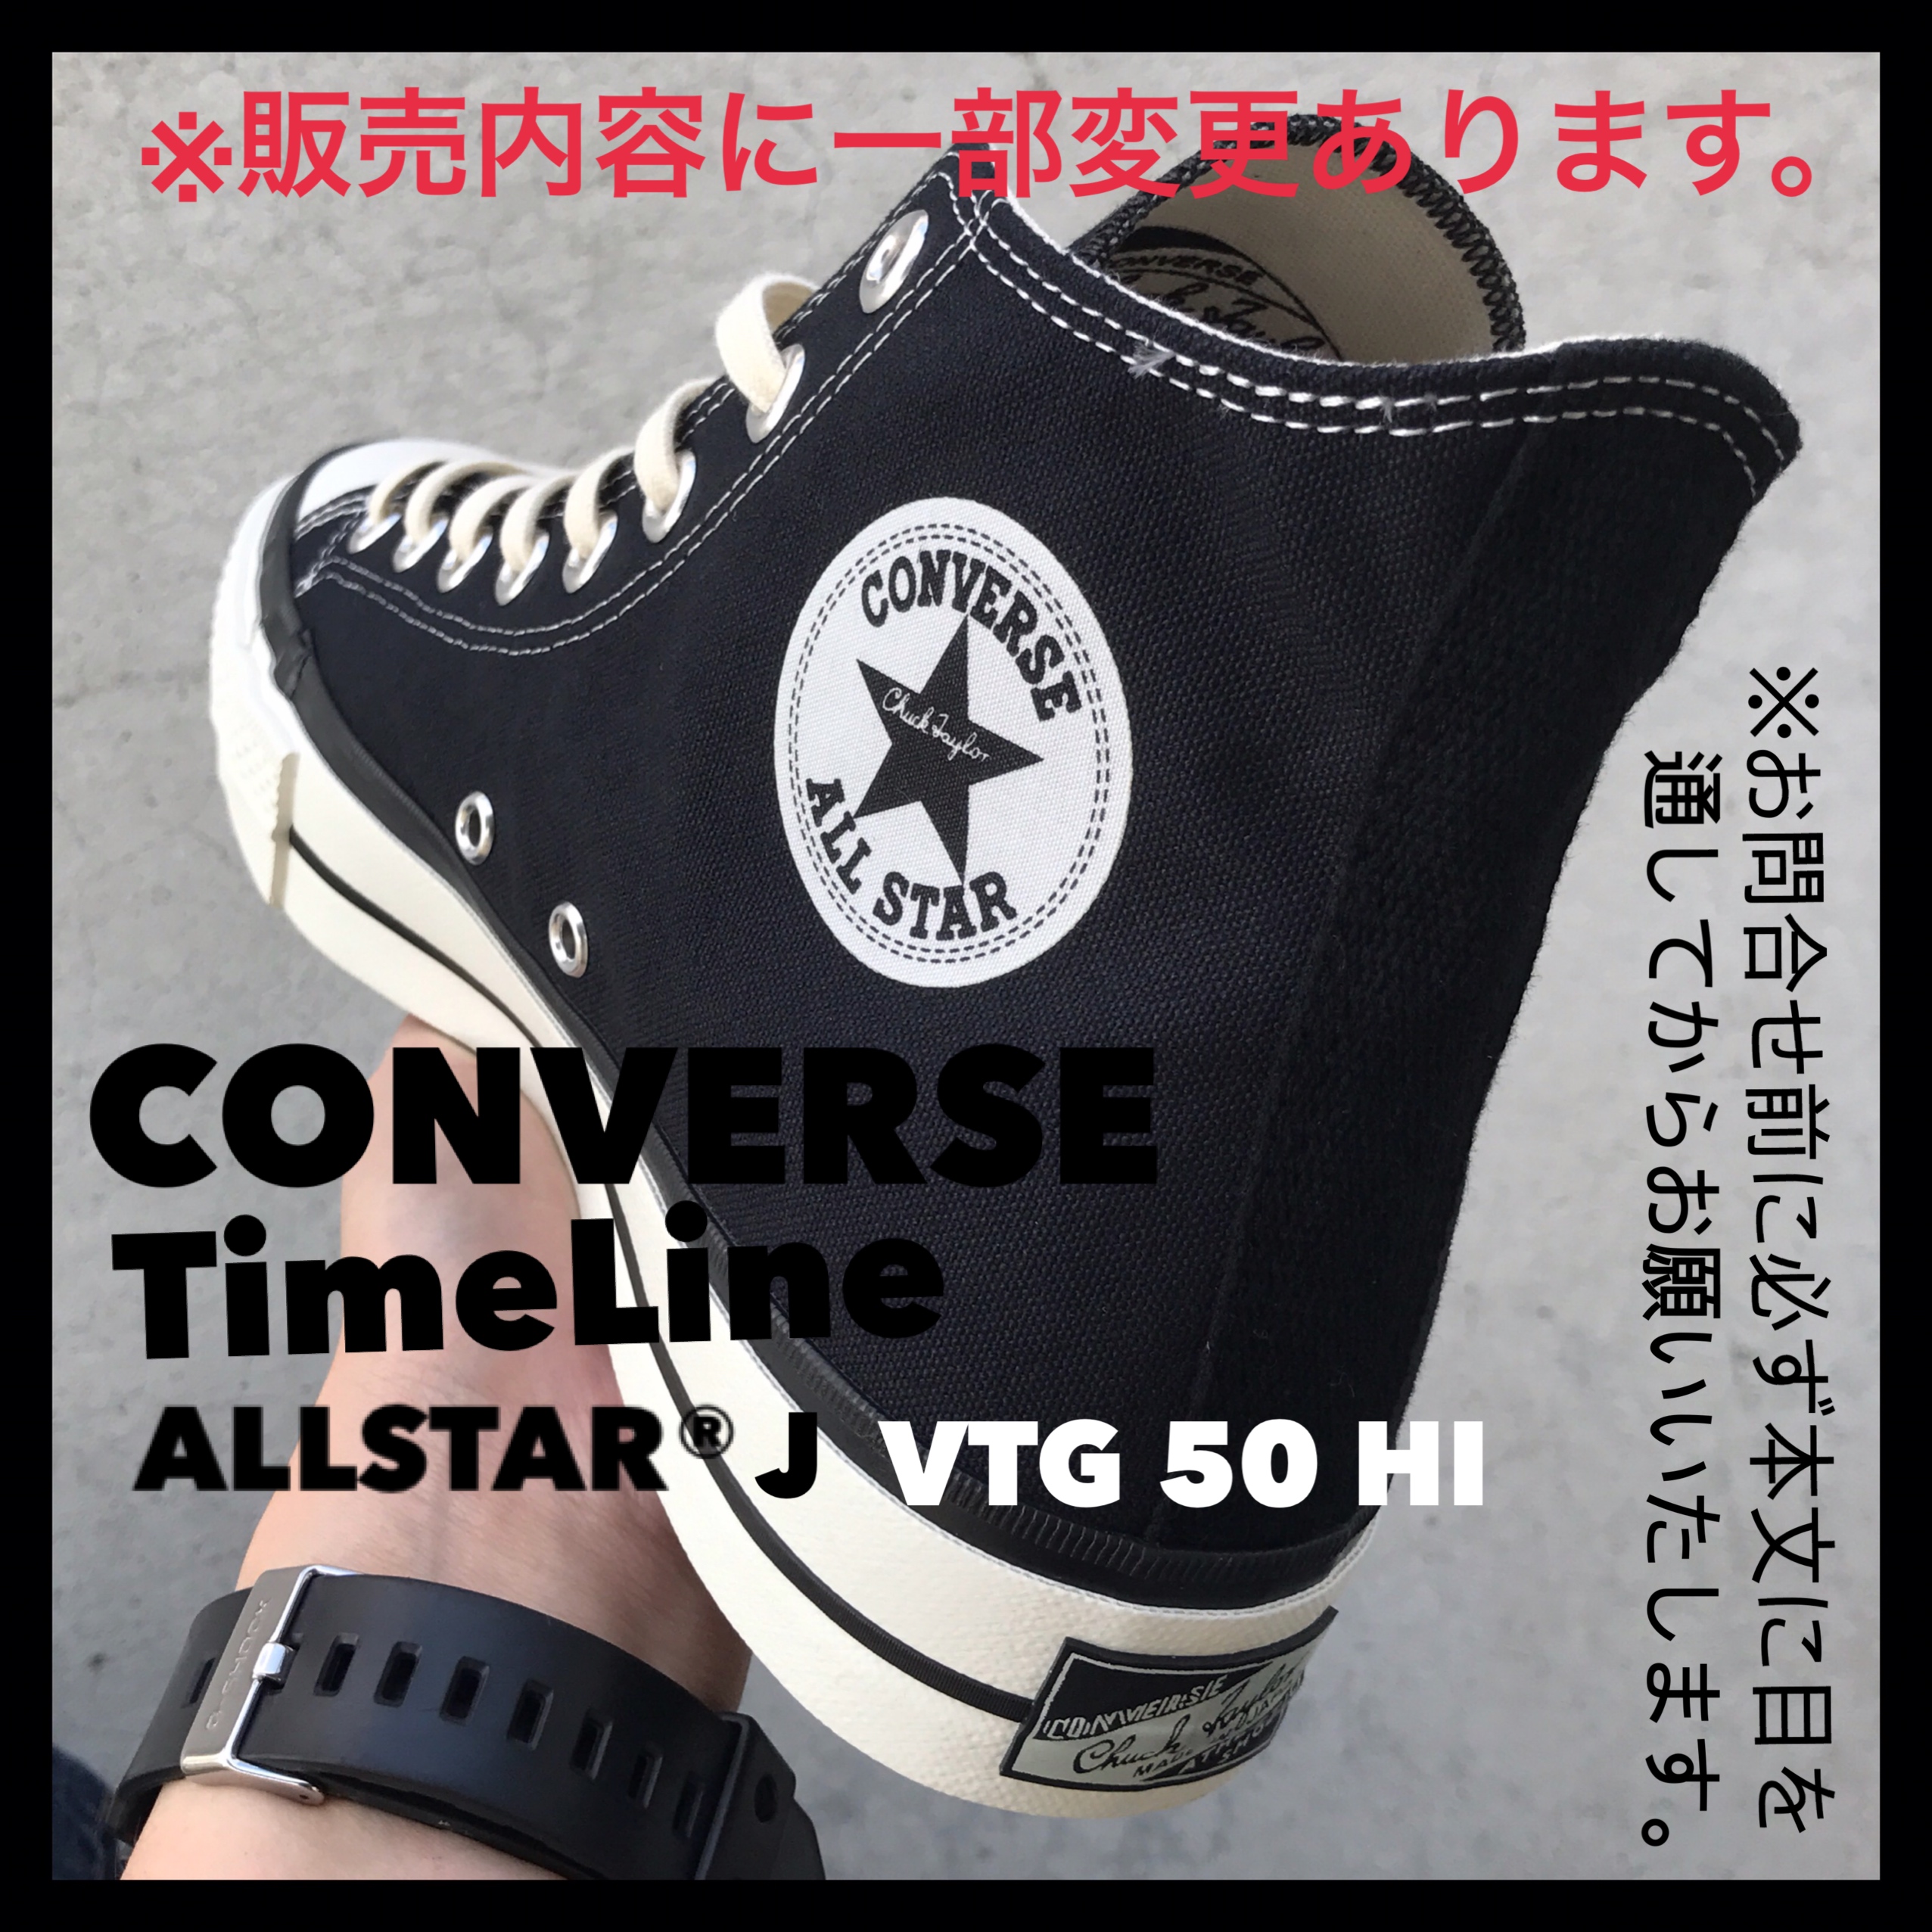 converse timeline 50